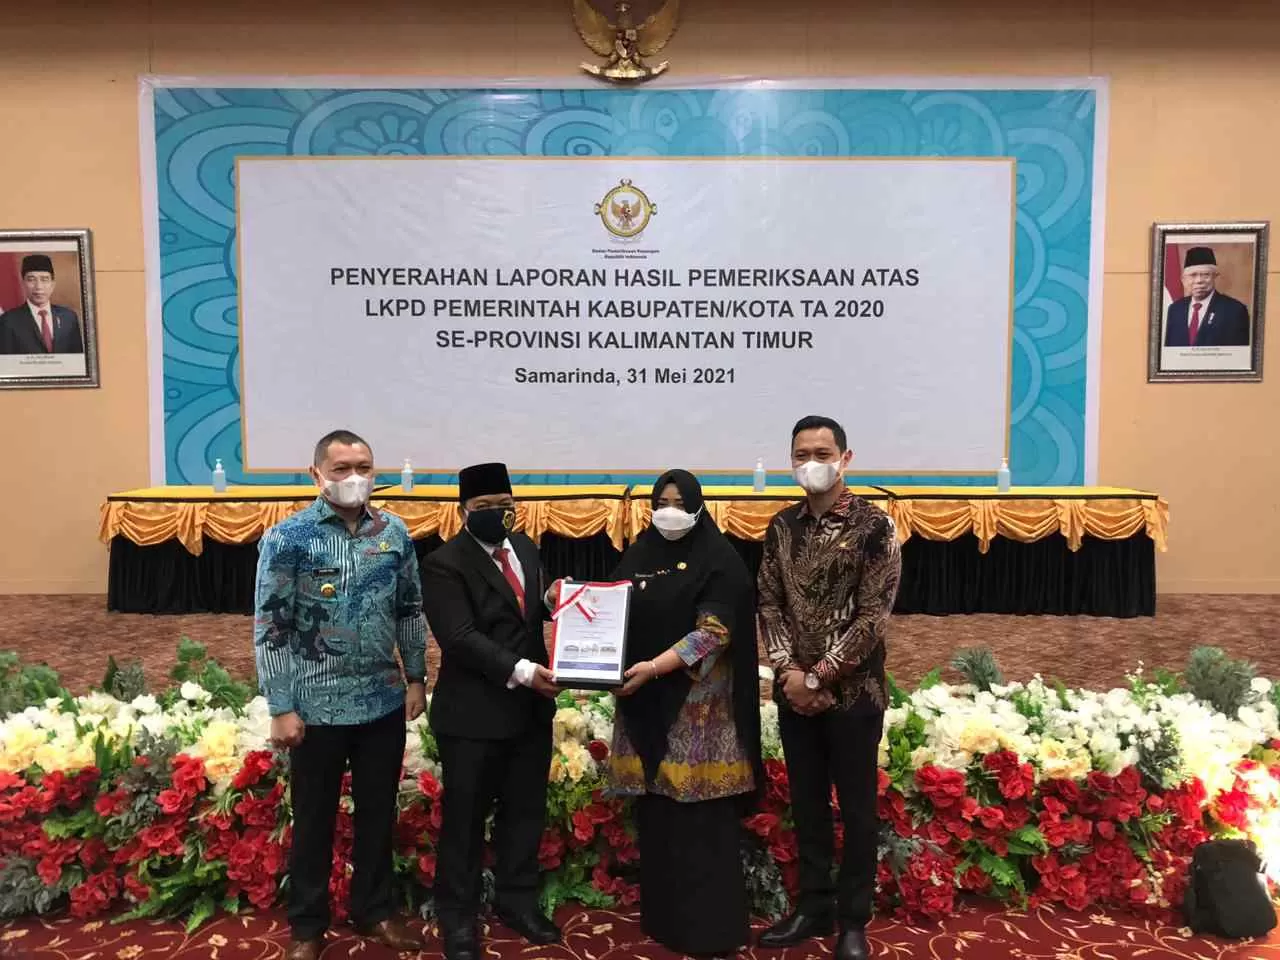 UKIR PRESTASI: Bupati Paser dr Fahmi Fadli (kiri), Wabup Paser Syarifah Masitah Assegaf (dua kanan) dan Ketua DPRD Paser Hendra Wahyudi (kanan) saat menerima penghargaan WTP di Samarinda, Senin (31/5).